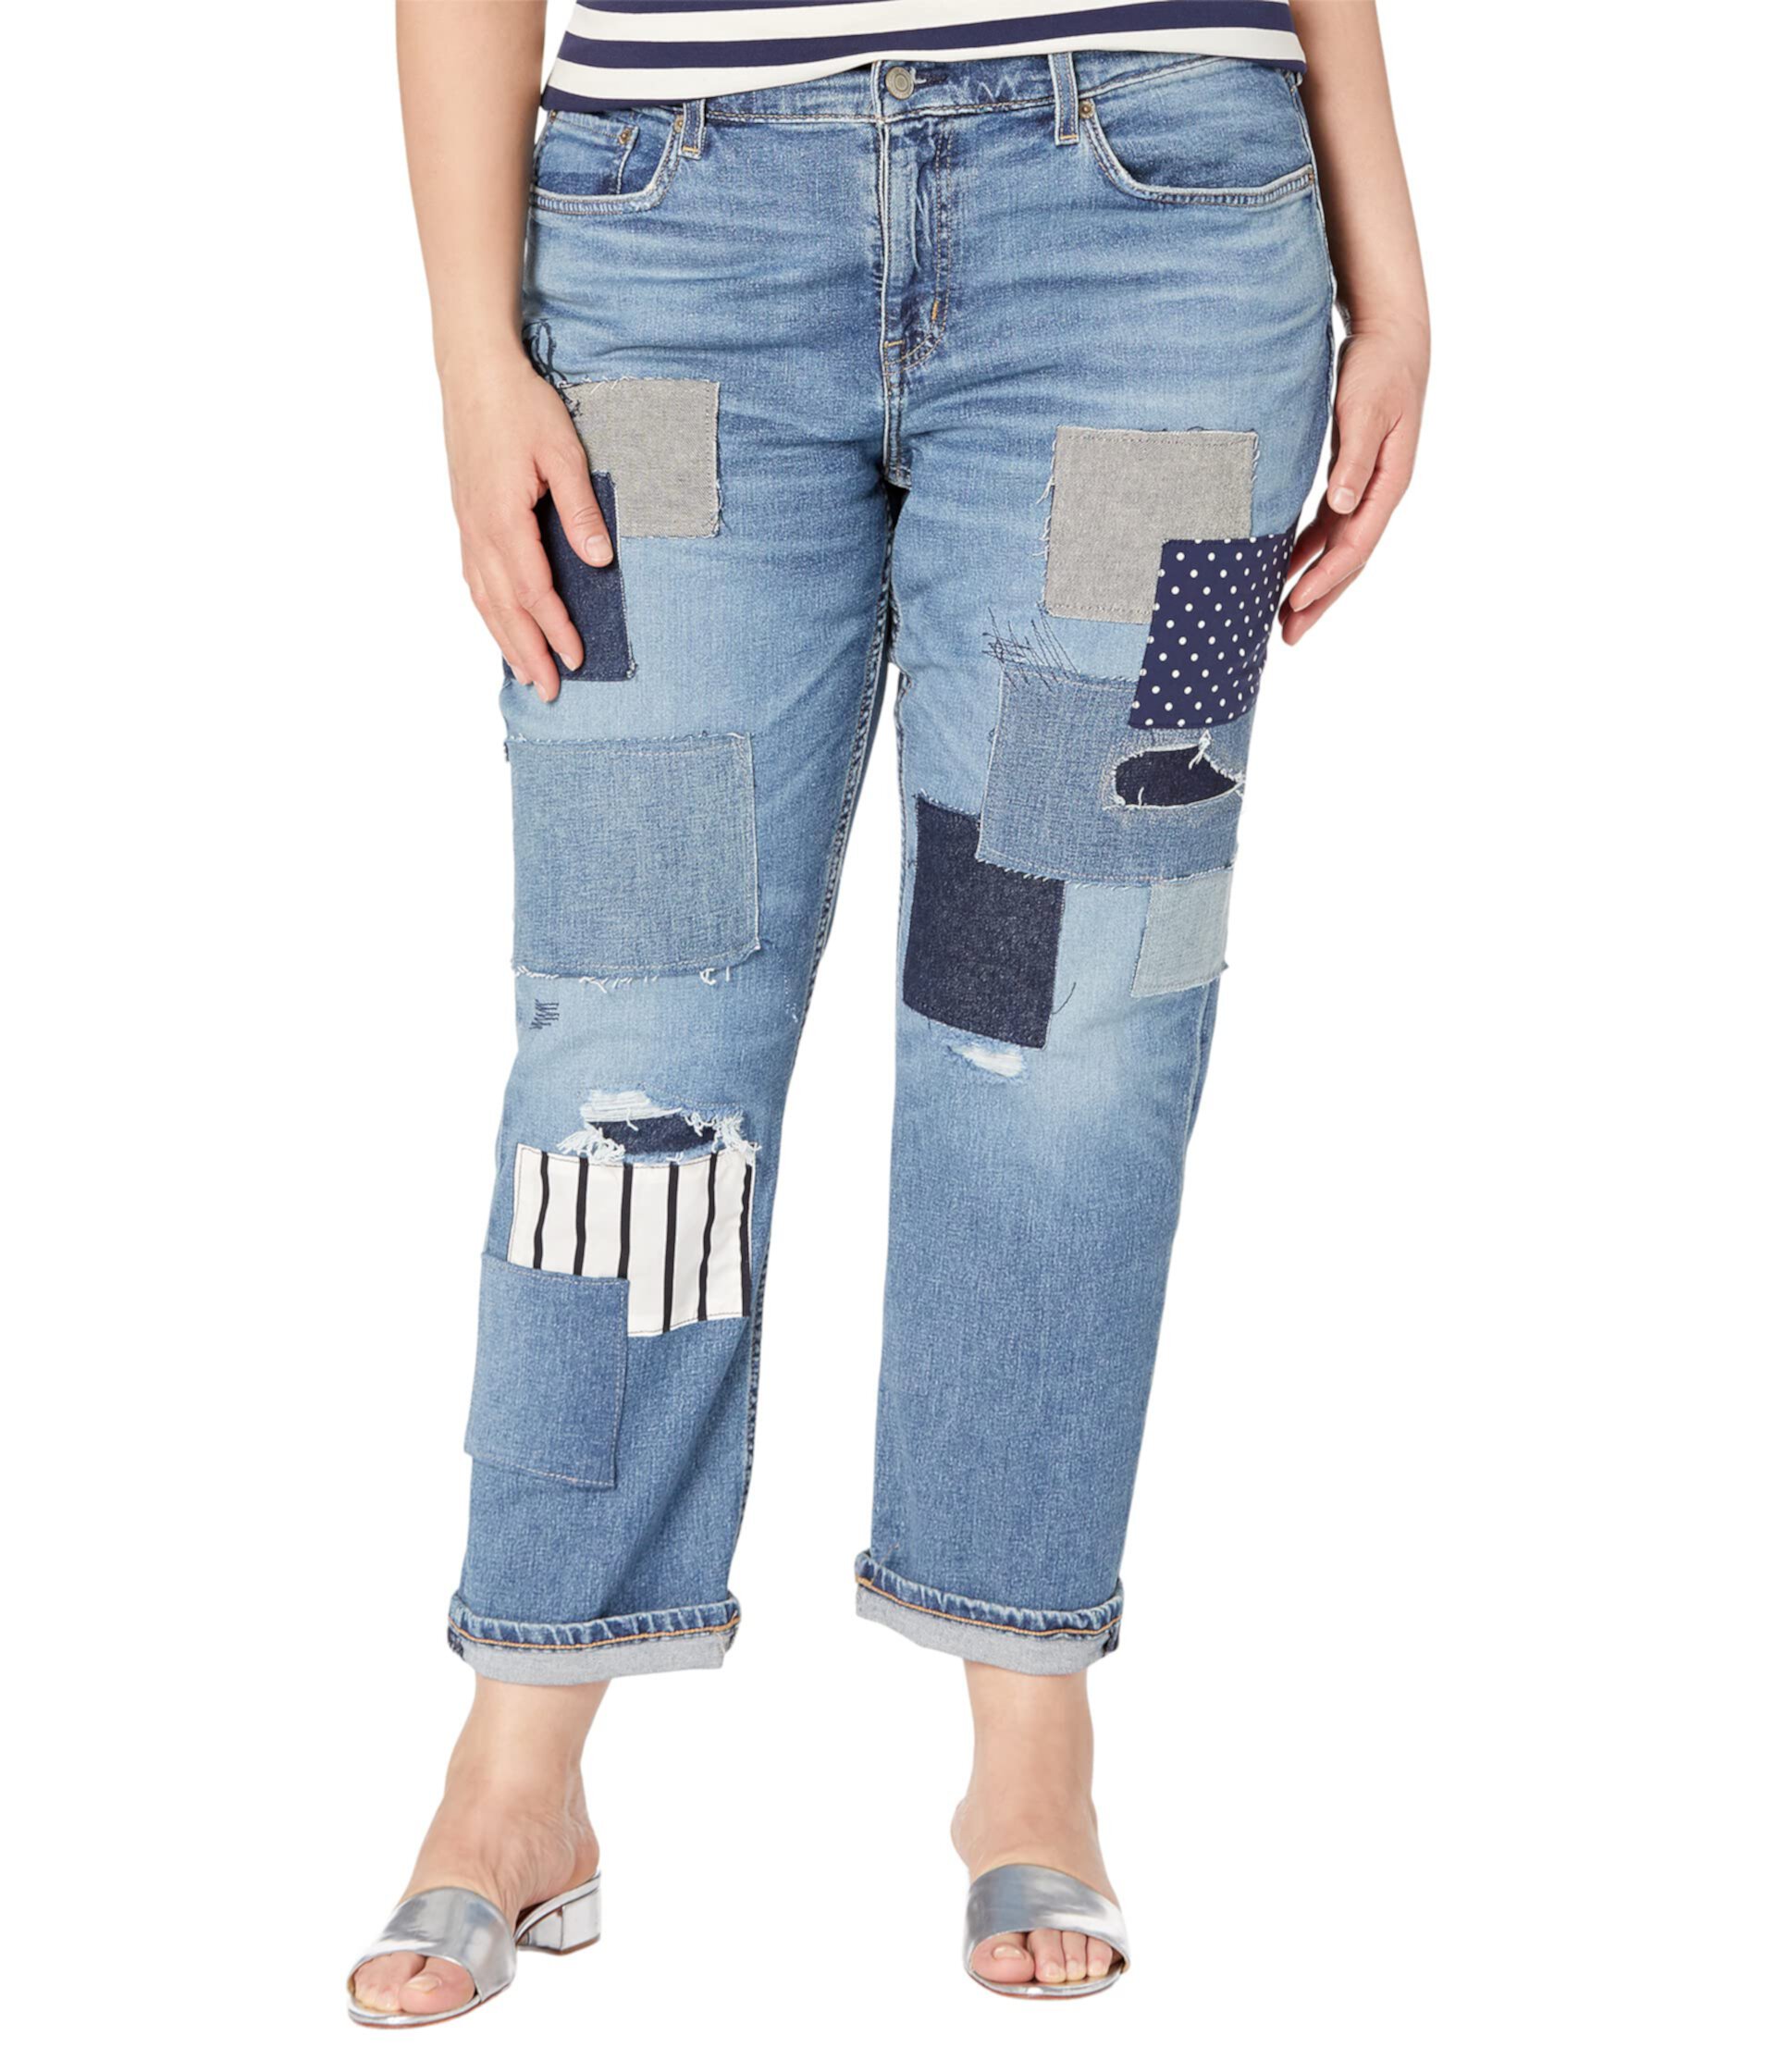 Свободные зауженные джинсы большого размера в технике пэчворк цвета Tinted Sapphire Wash Ralph Lauren